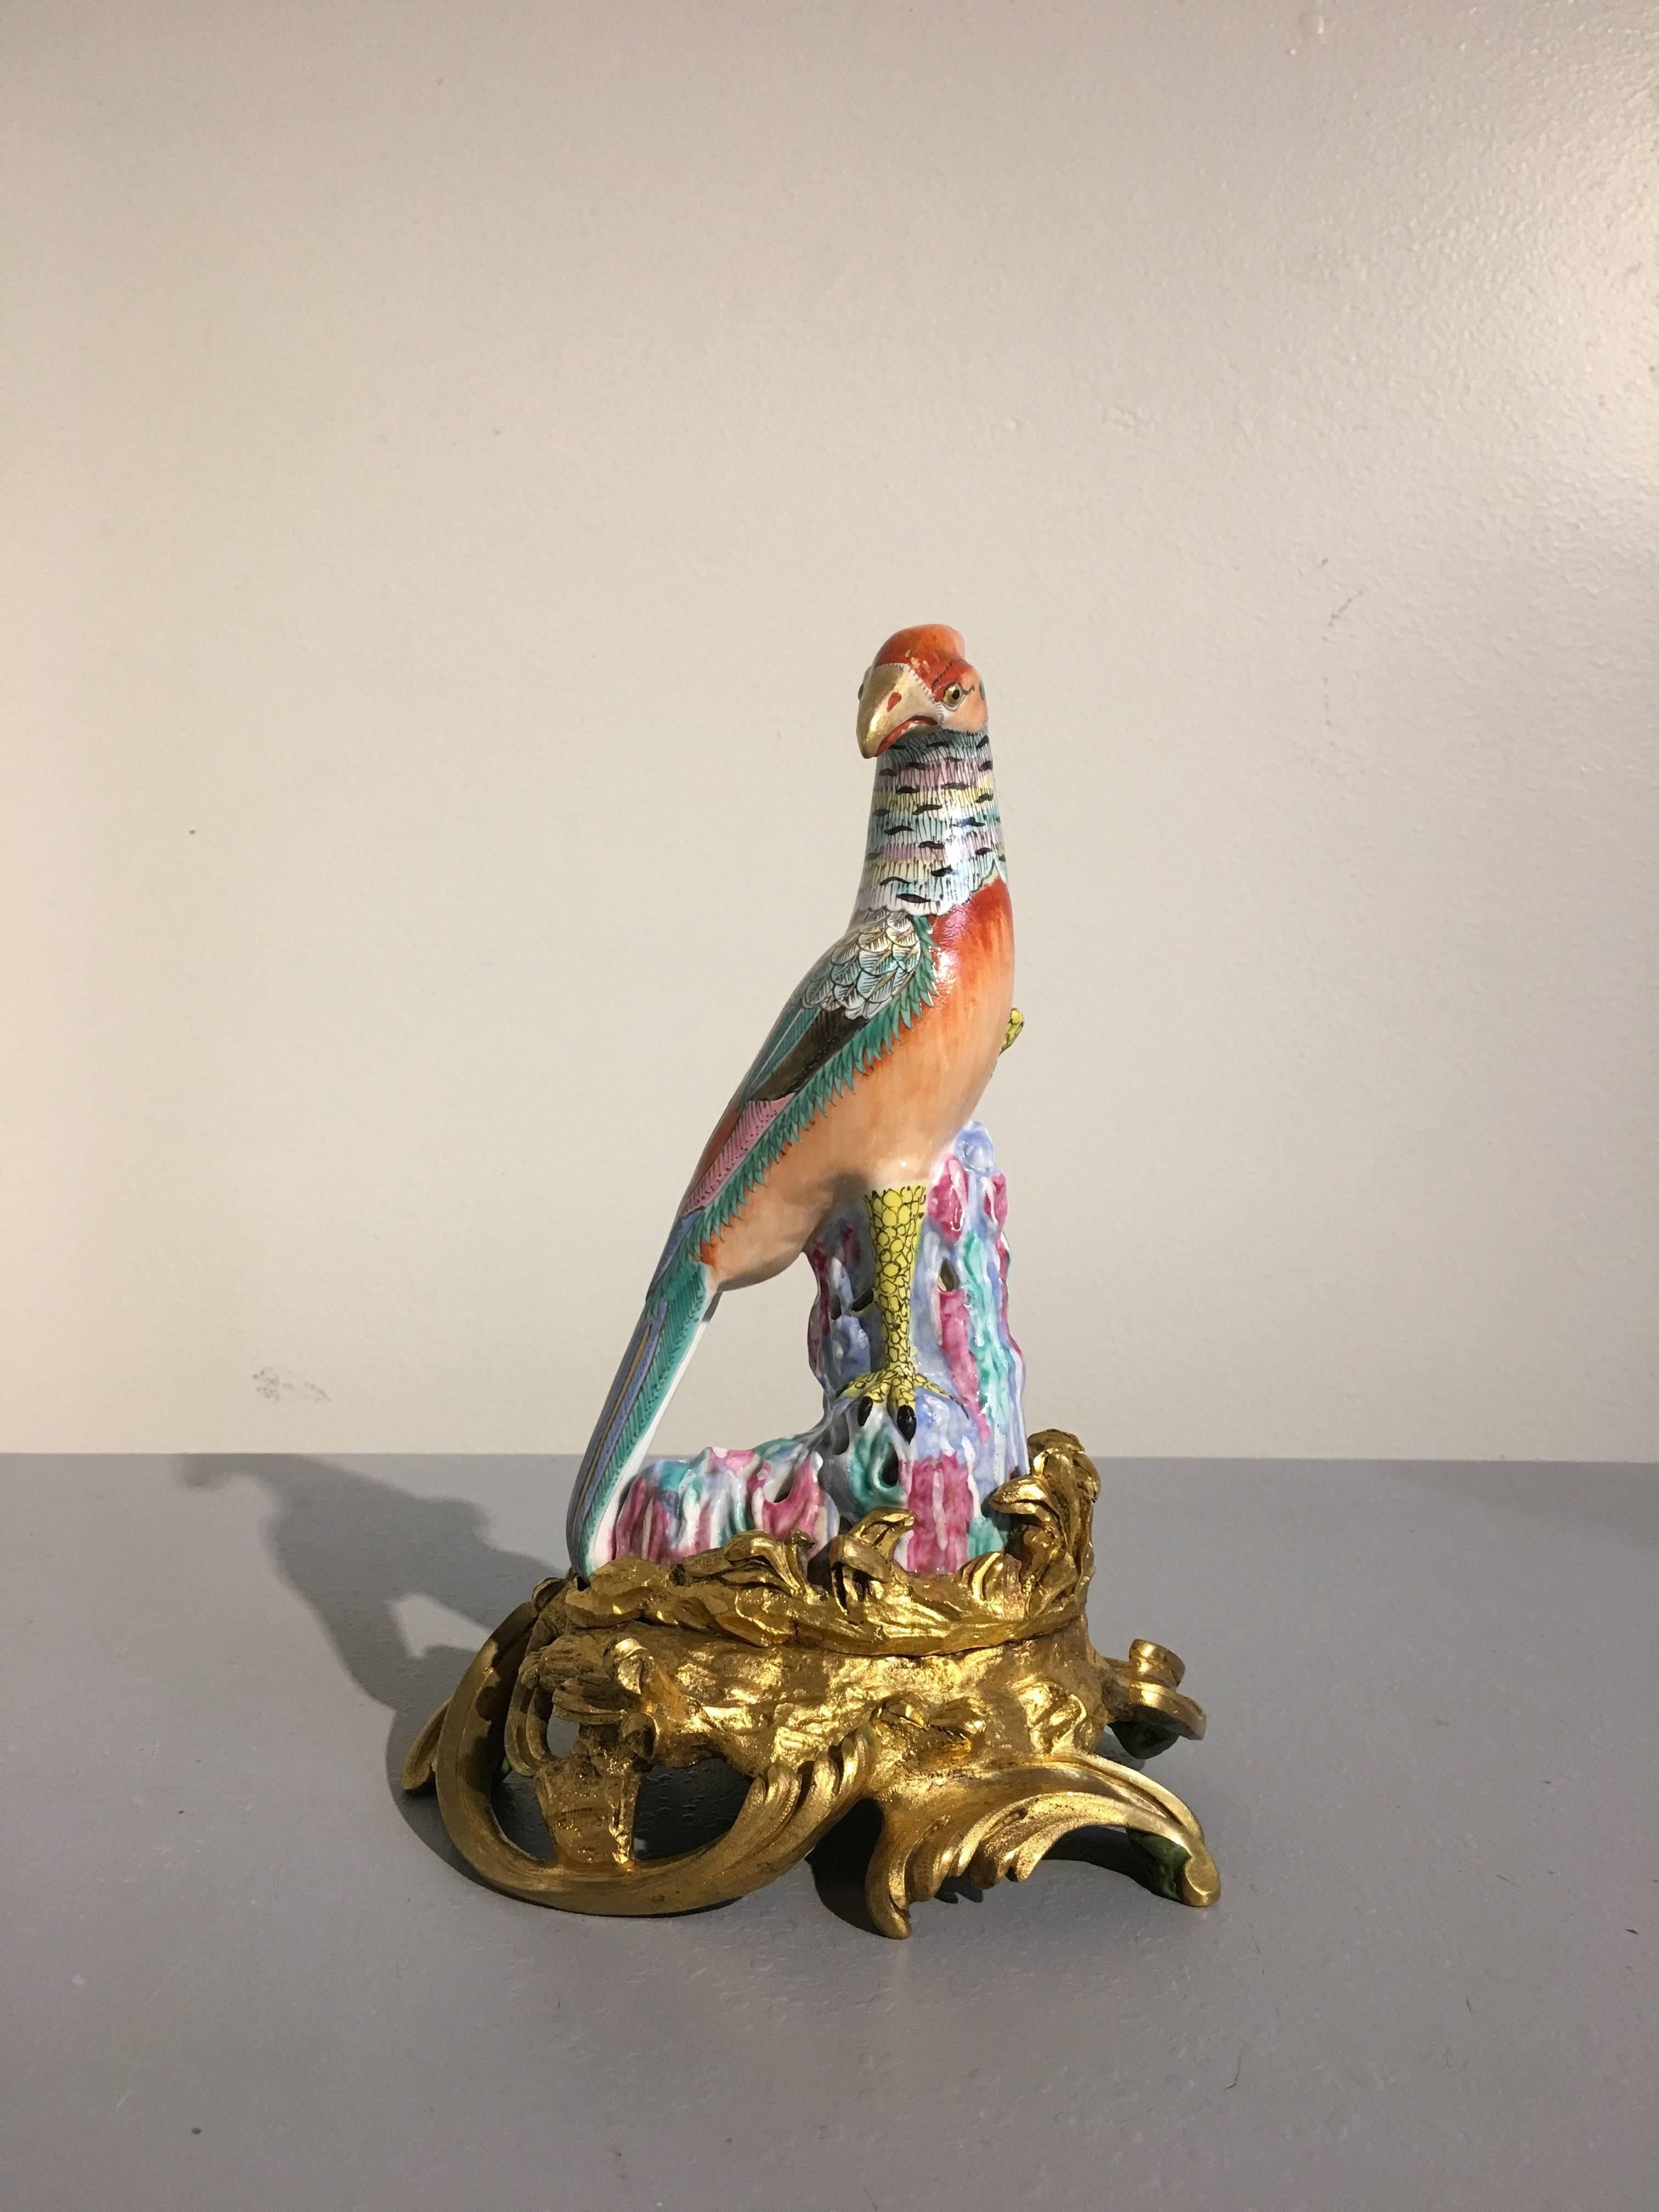 Magnifique modèle de faisan en porcelaine émaillée de la famille rose, monté sur un support en bronze doré. 
L'élégant oiseau est représenté perché sur un affleurement rocheux, une patte levée, la tête tournée. L'ensemble de la figure est peint